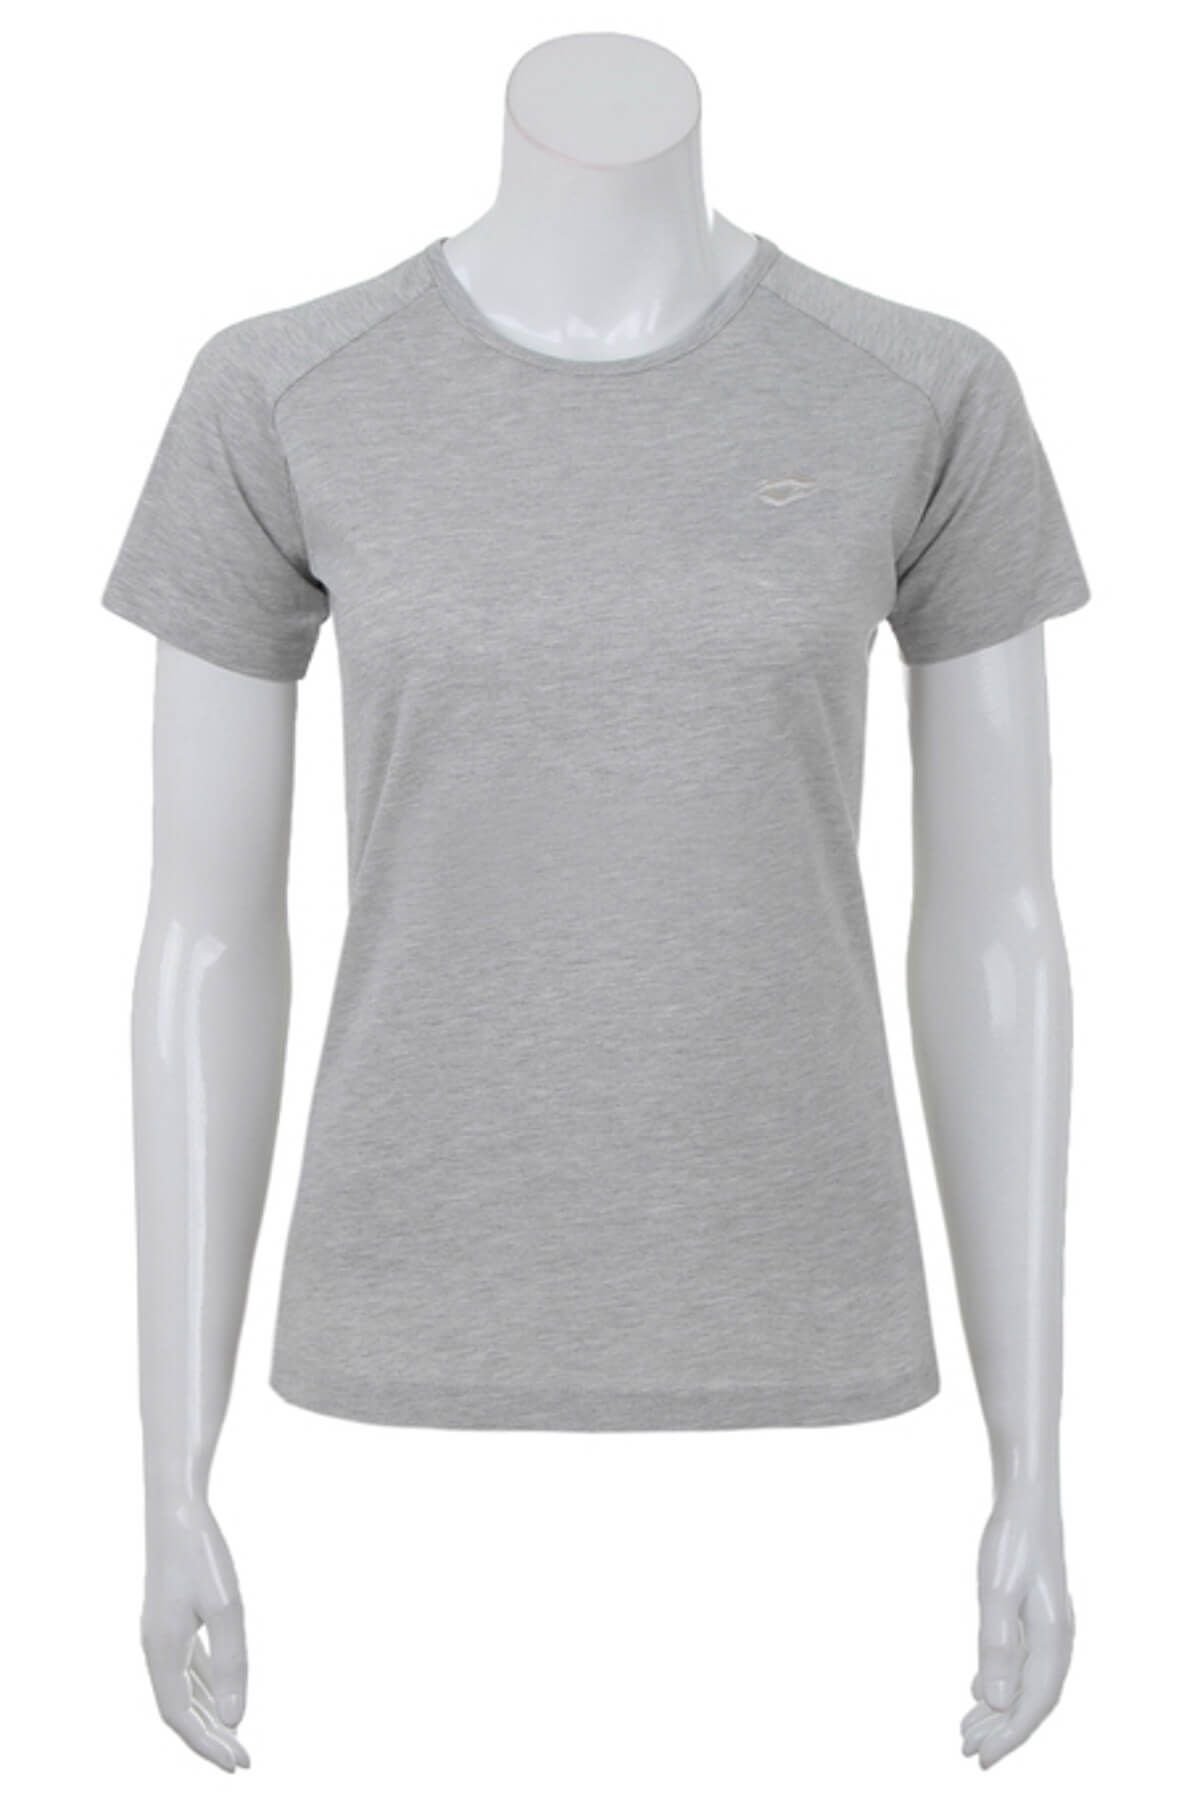 Lotto Kadın T-Shirt - Lavı Tee Js W Kadın T-Shirt Gri - R3375